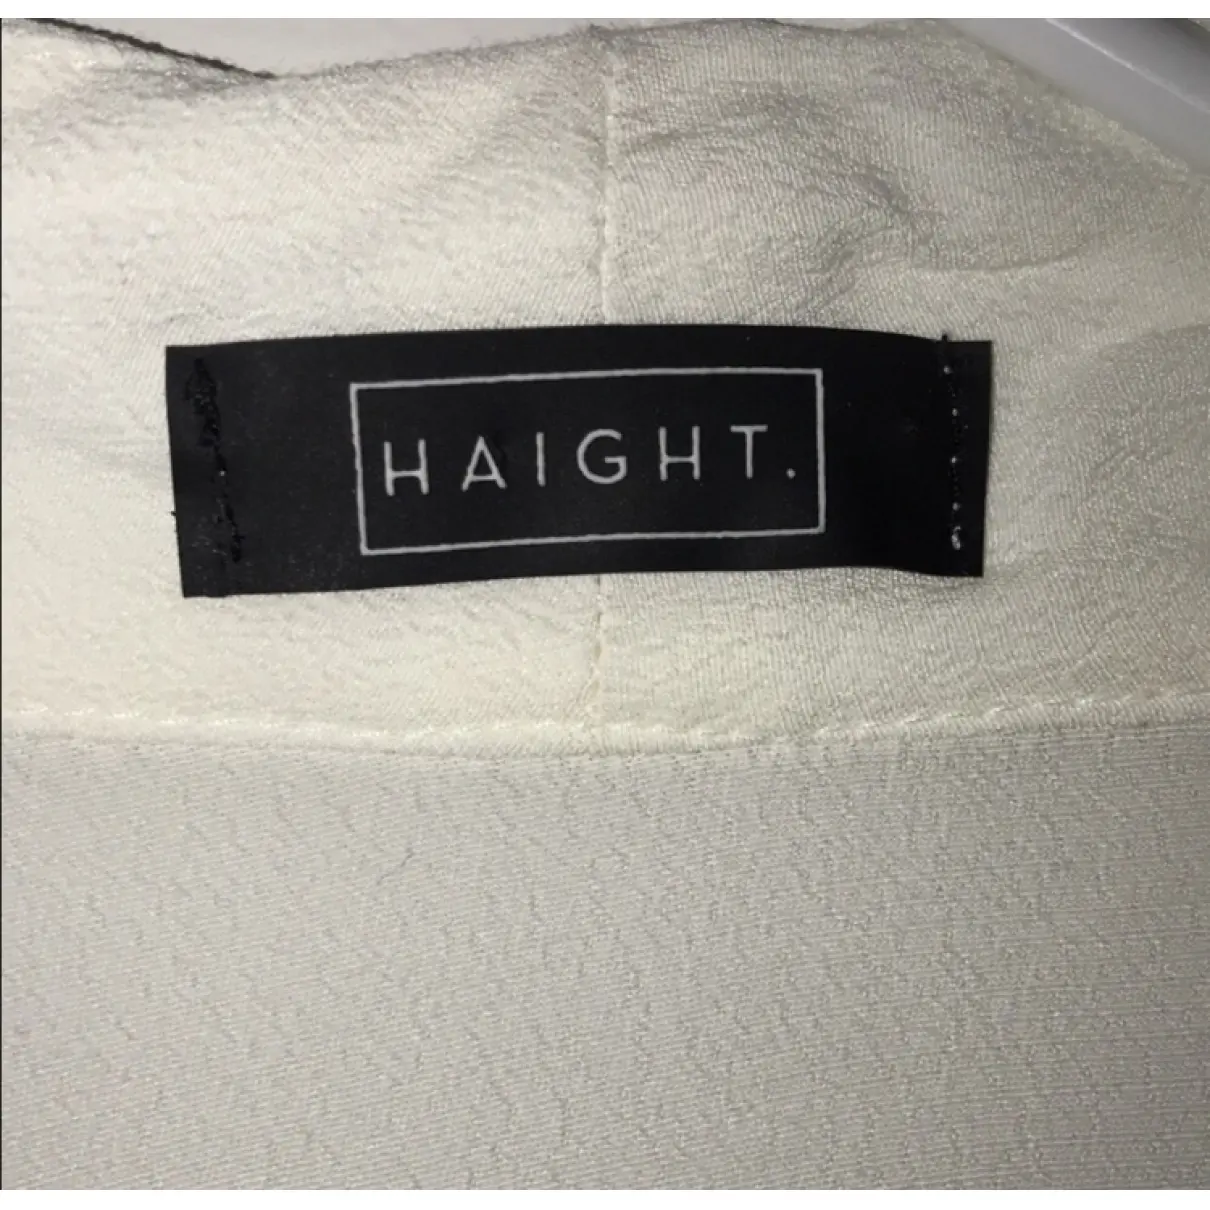 Buy Haight Dress online